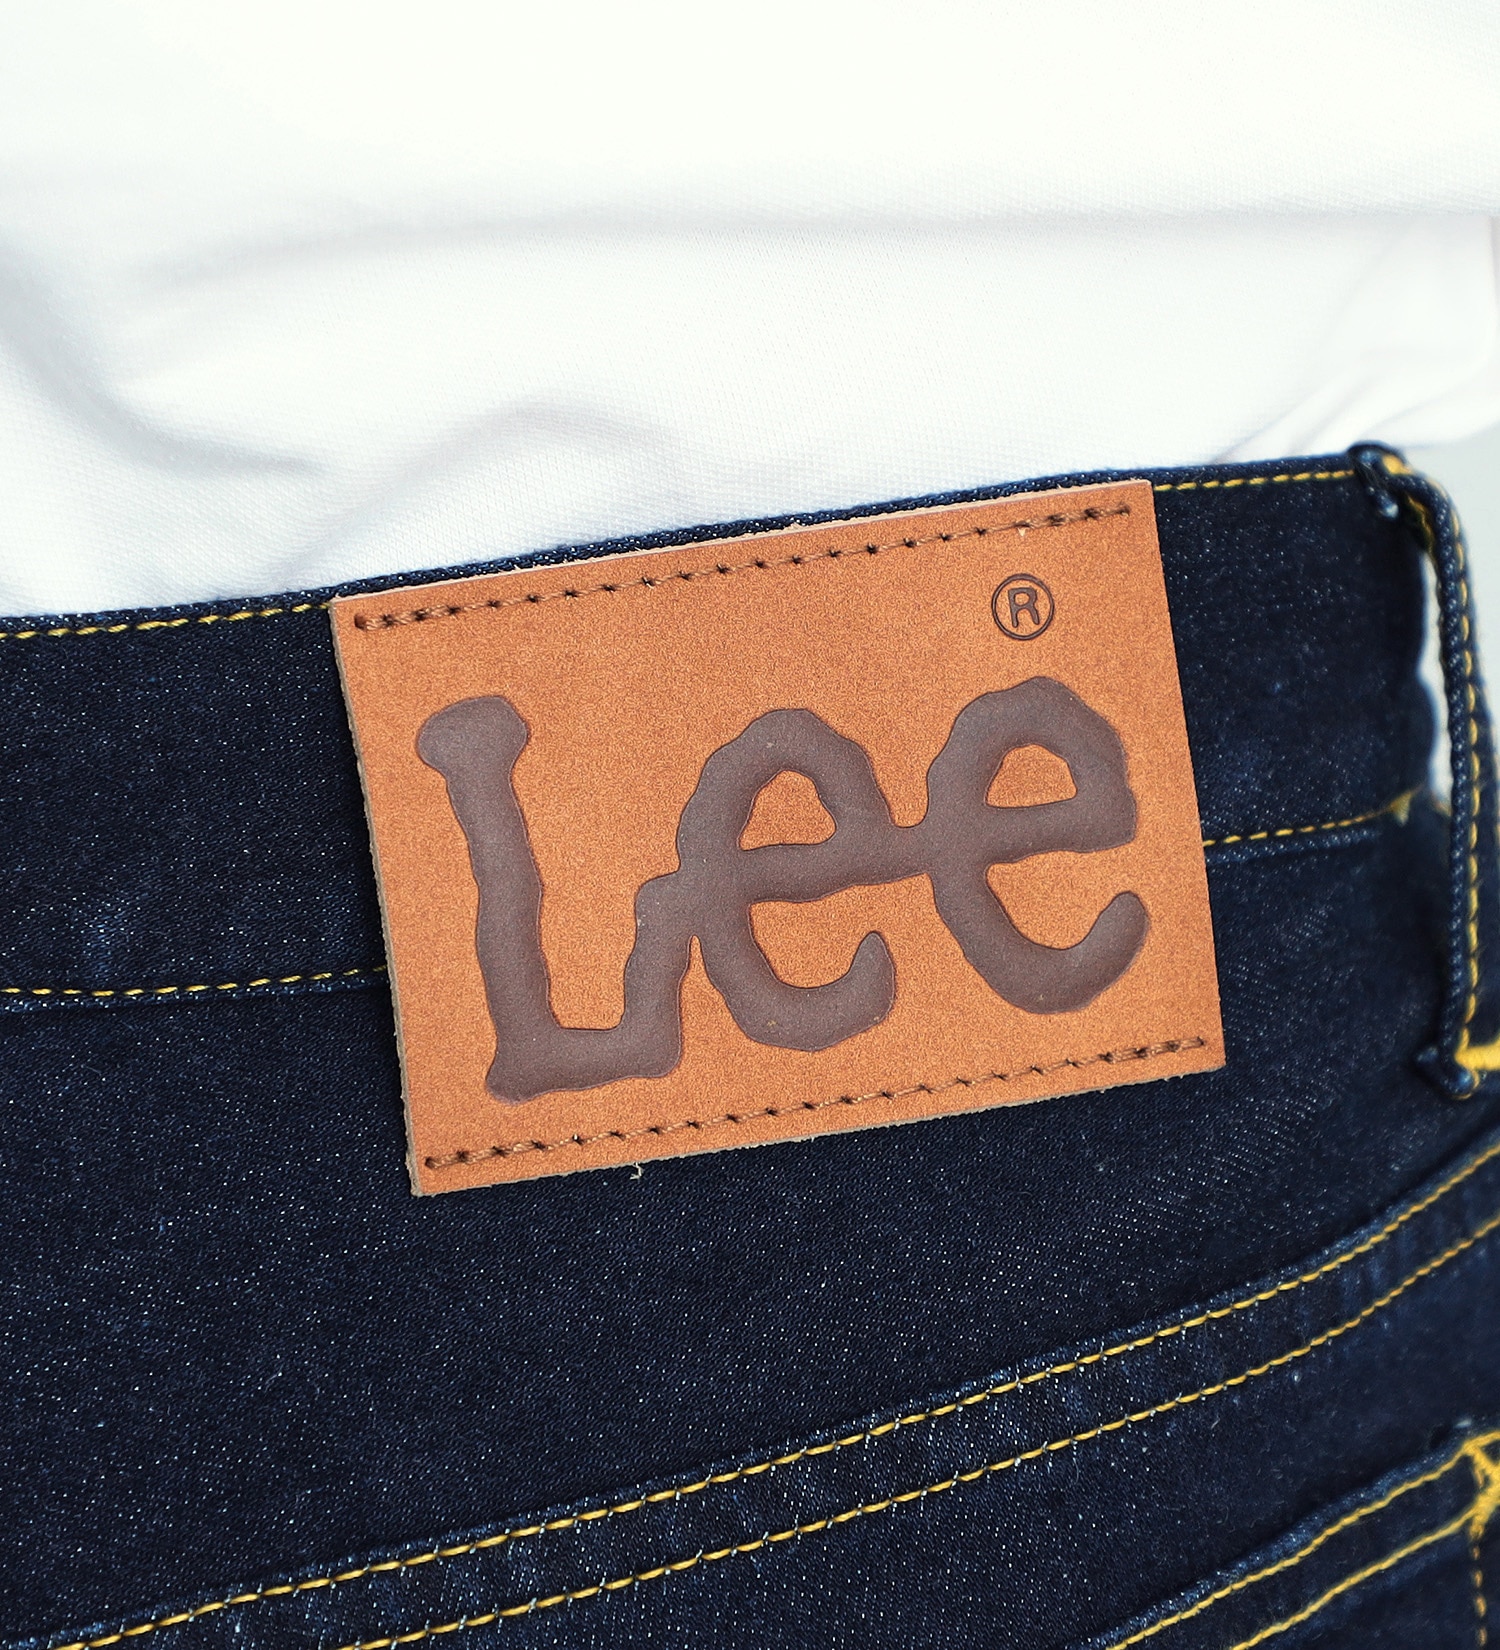 Lee(リー)の【TIME SALE】【涼】ドライタッチで涼しく快適AMERICAN STANDARD 102 ブーツカット　吸汗速乾/梅雨対策【COOL】|パンツ/デニムパンツ/メンズ|インディゴブルー